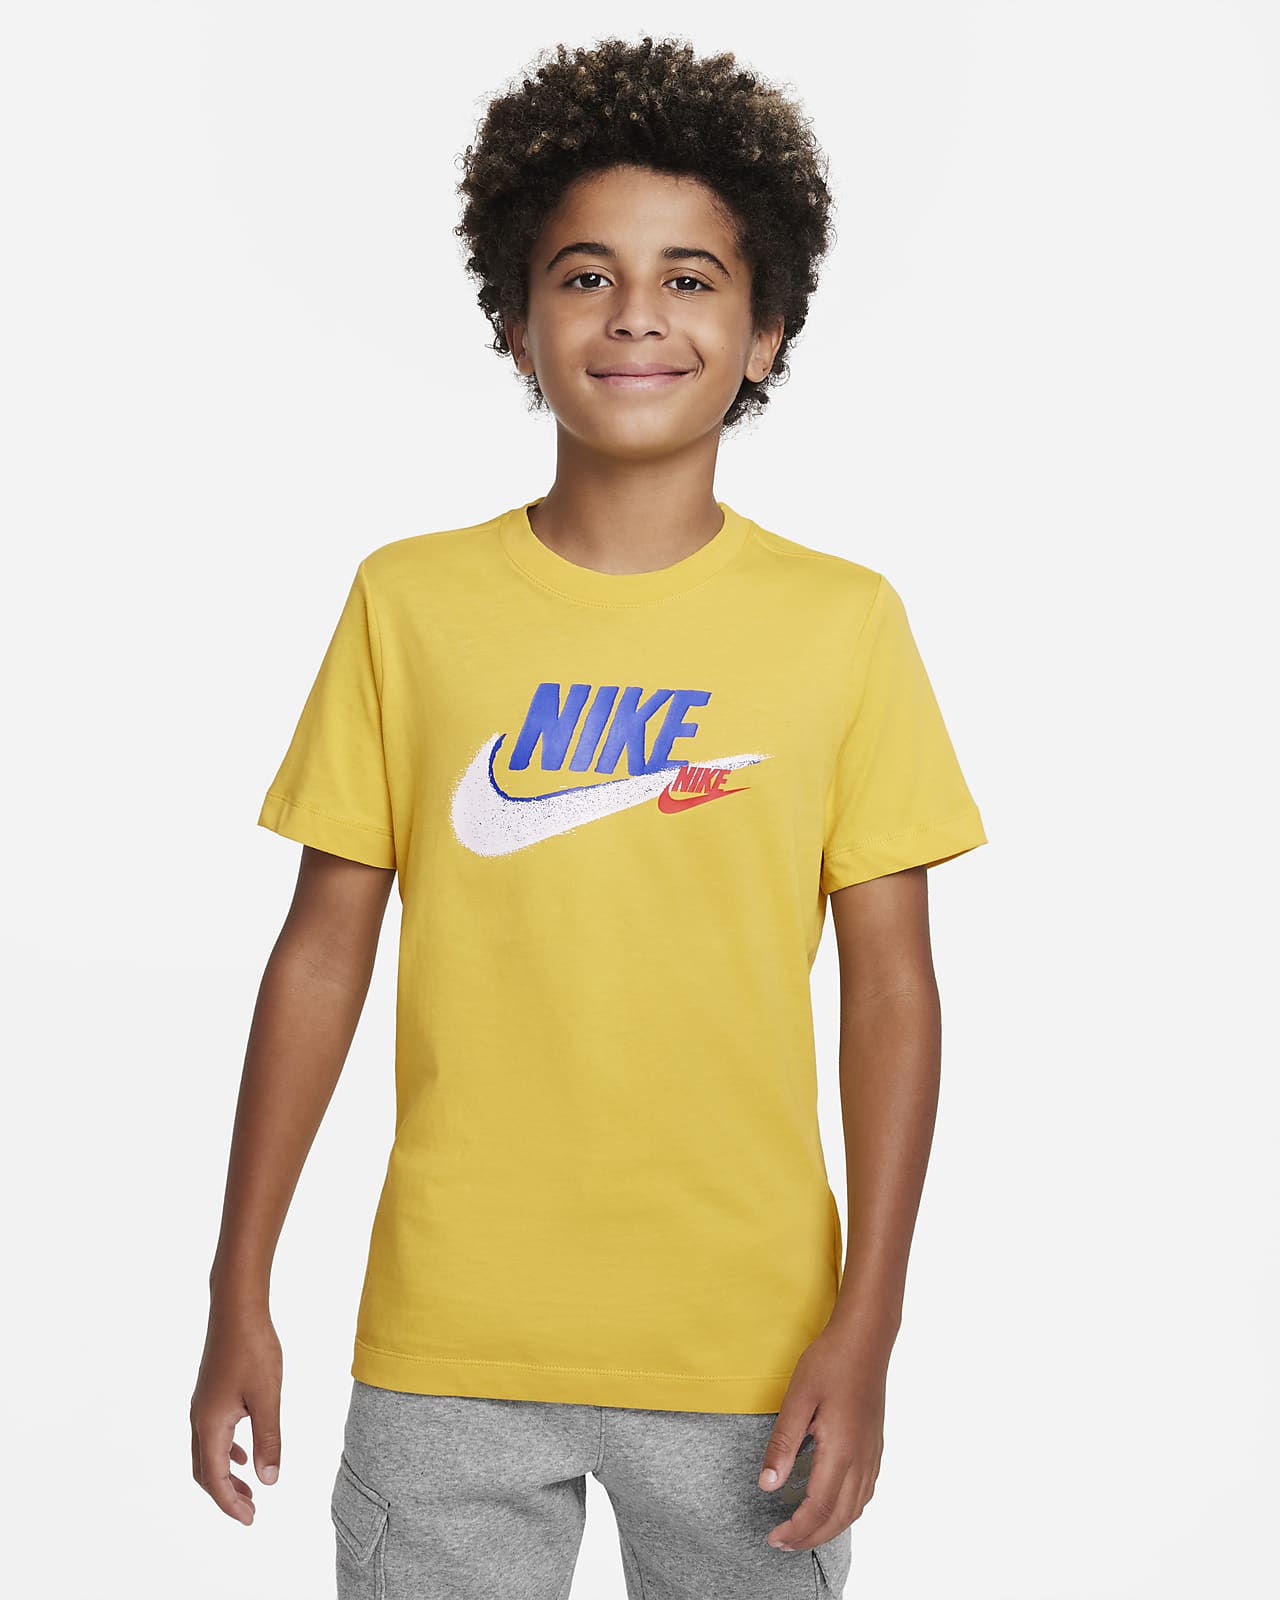 Nike Sportswear Standard Issue Kids' (Boys') Nike UK